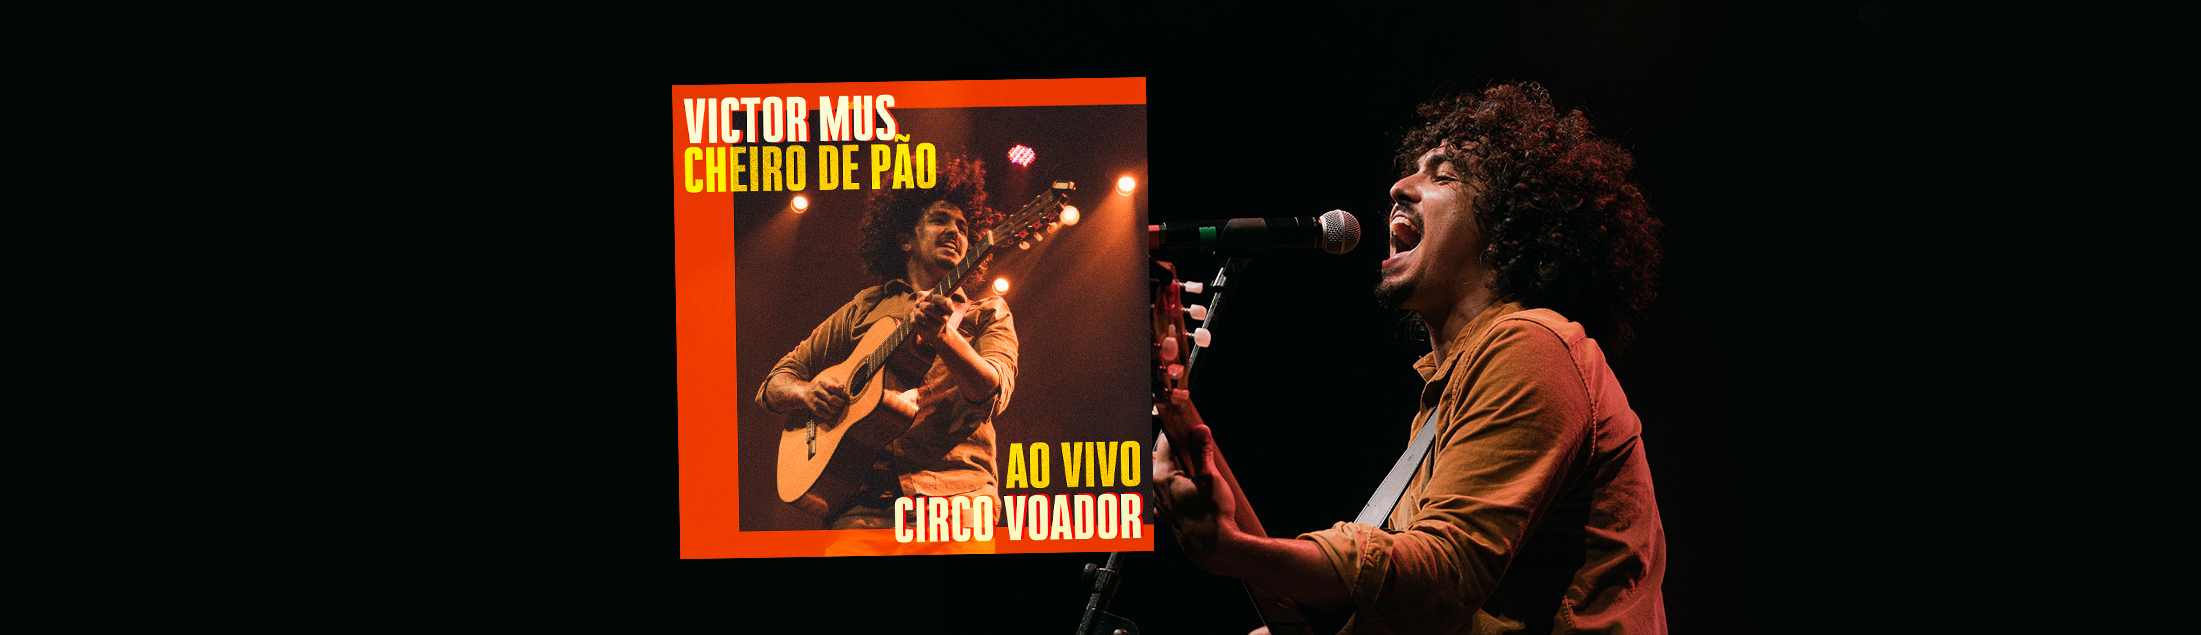 Victor Mus lança single 'Cheiro de Pão' gravado ao vivo no Circo Voador